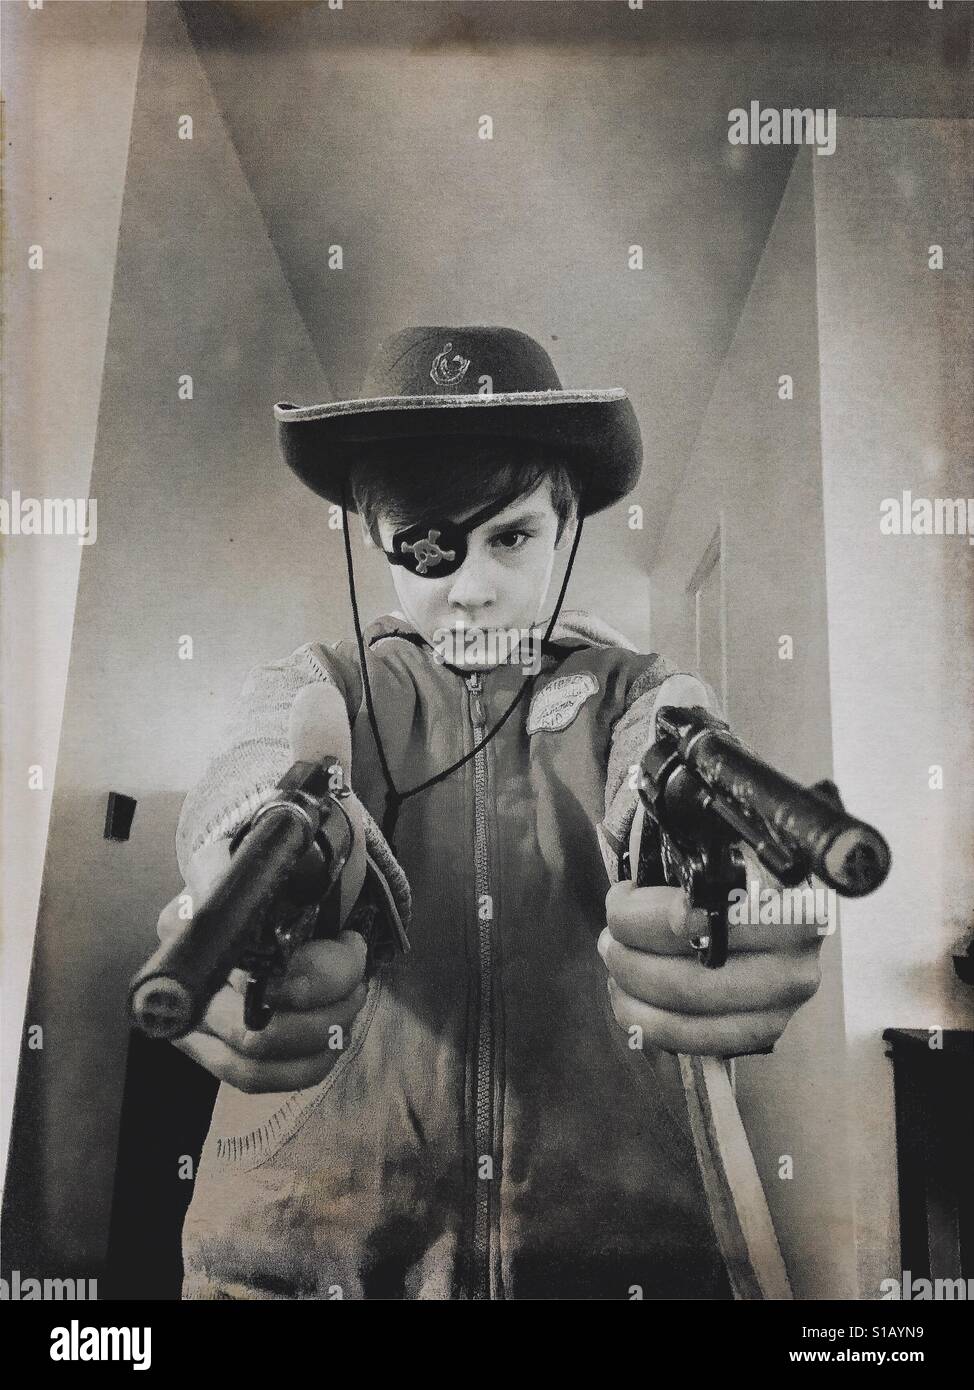 Jeune garçon avec un pistolet jouet et de hat Banque D'Images